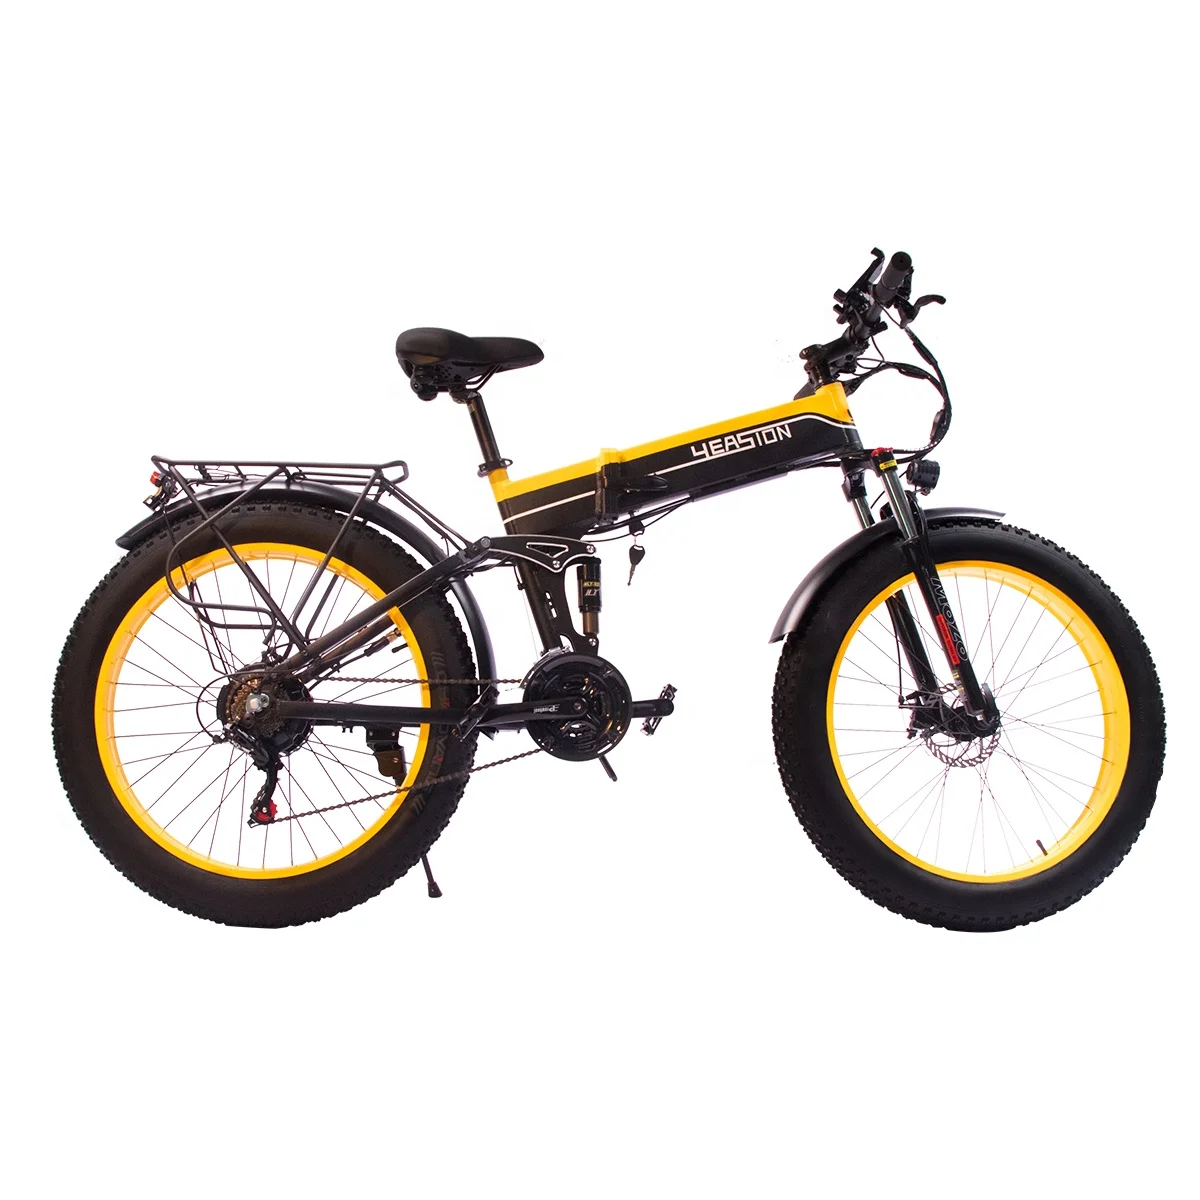 

YEASIONWD Free Shipping 26"X4.0 Wheel Mountain Bike 1000W Motor Snow Bike 14Ah Lithium Battery Fat Tire Folding Electric Bike, Customizable